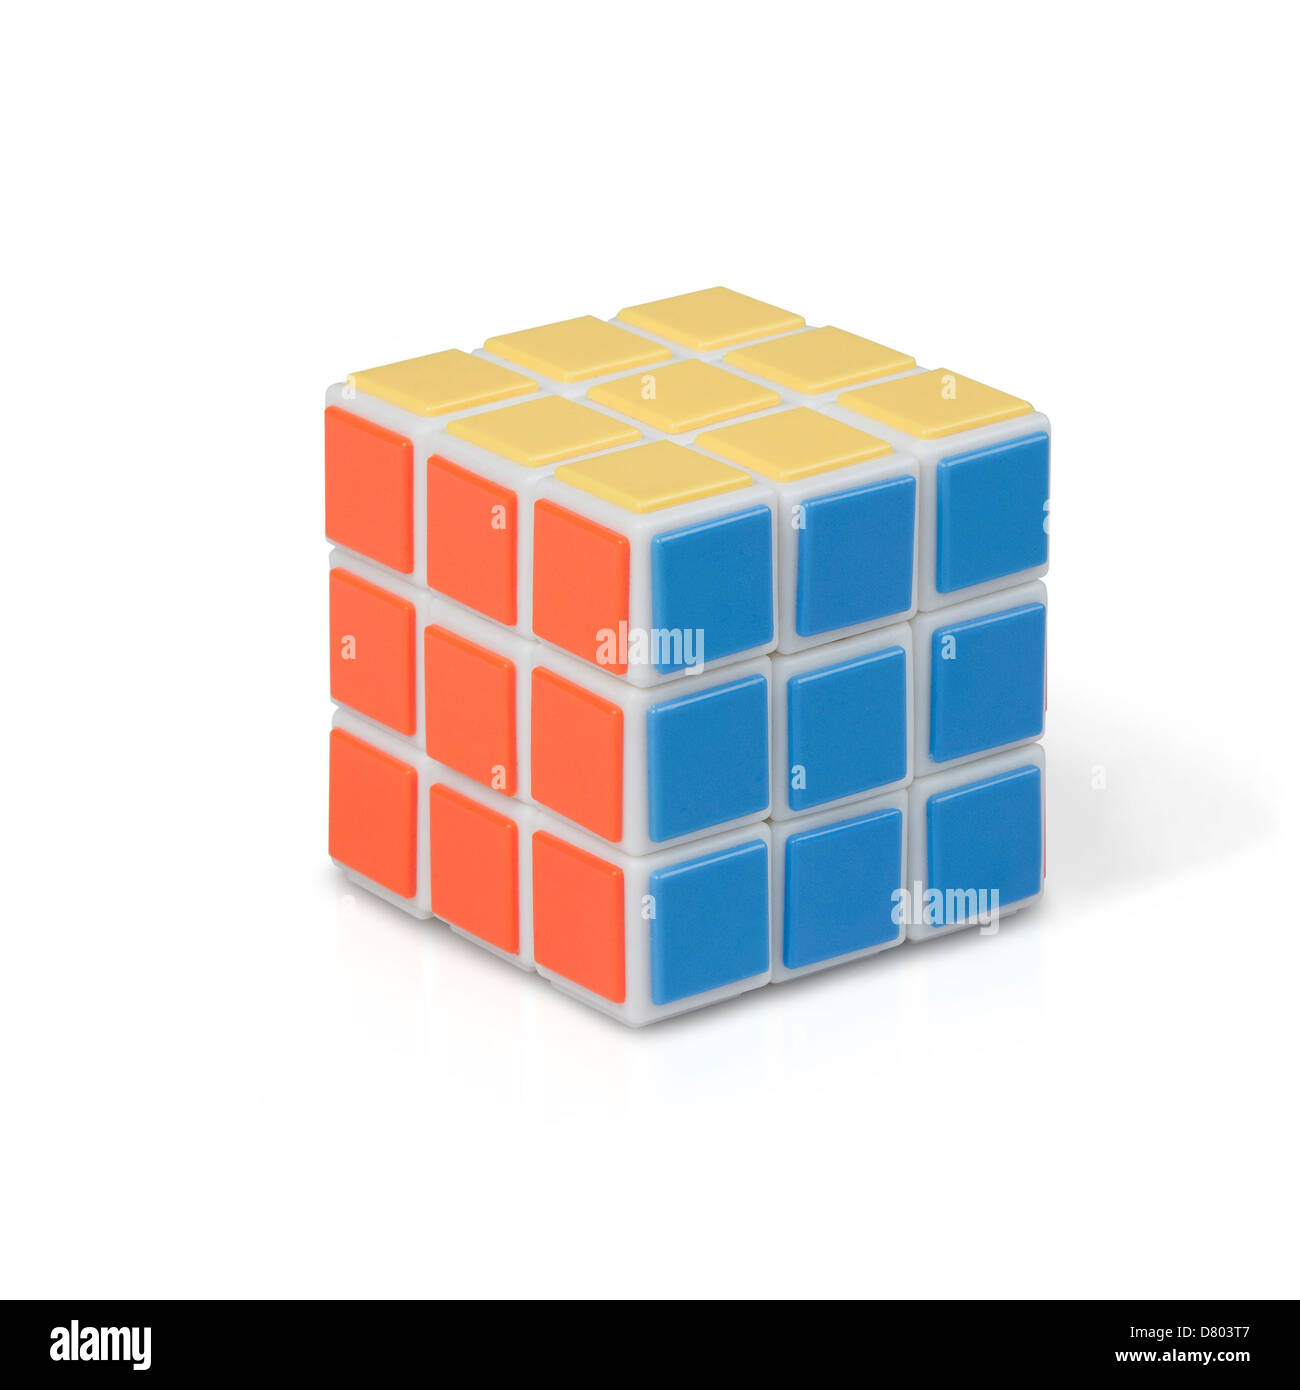 Rubic cube sur fond blanc Banque D'Images